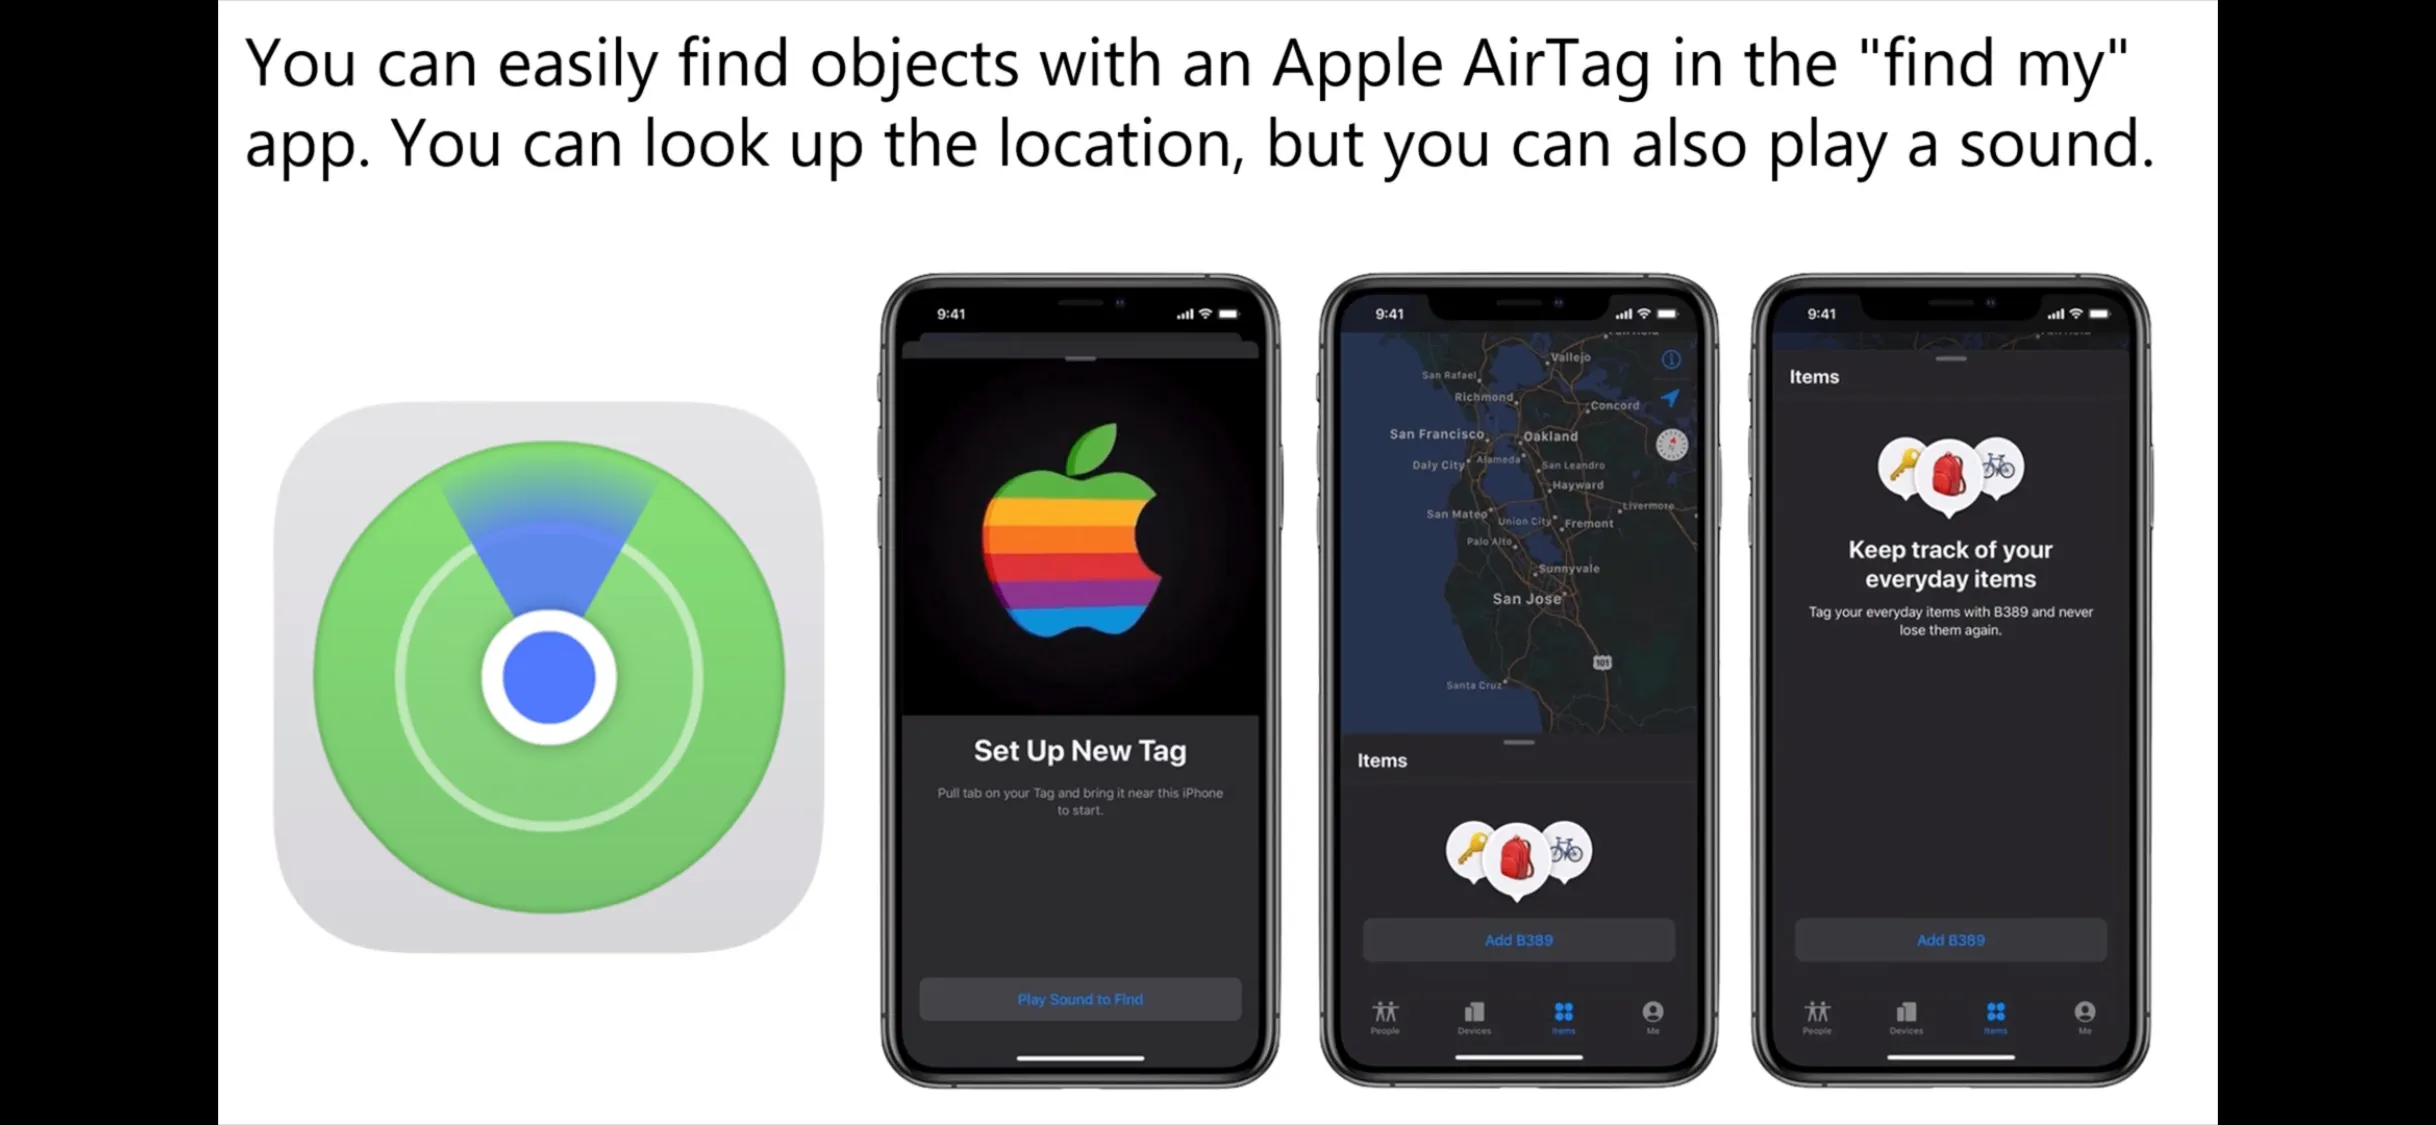 苹果将发布追踪配件“airtag”可以查找个人物品包括伴侣